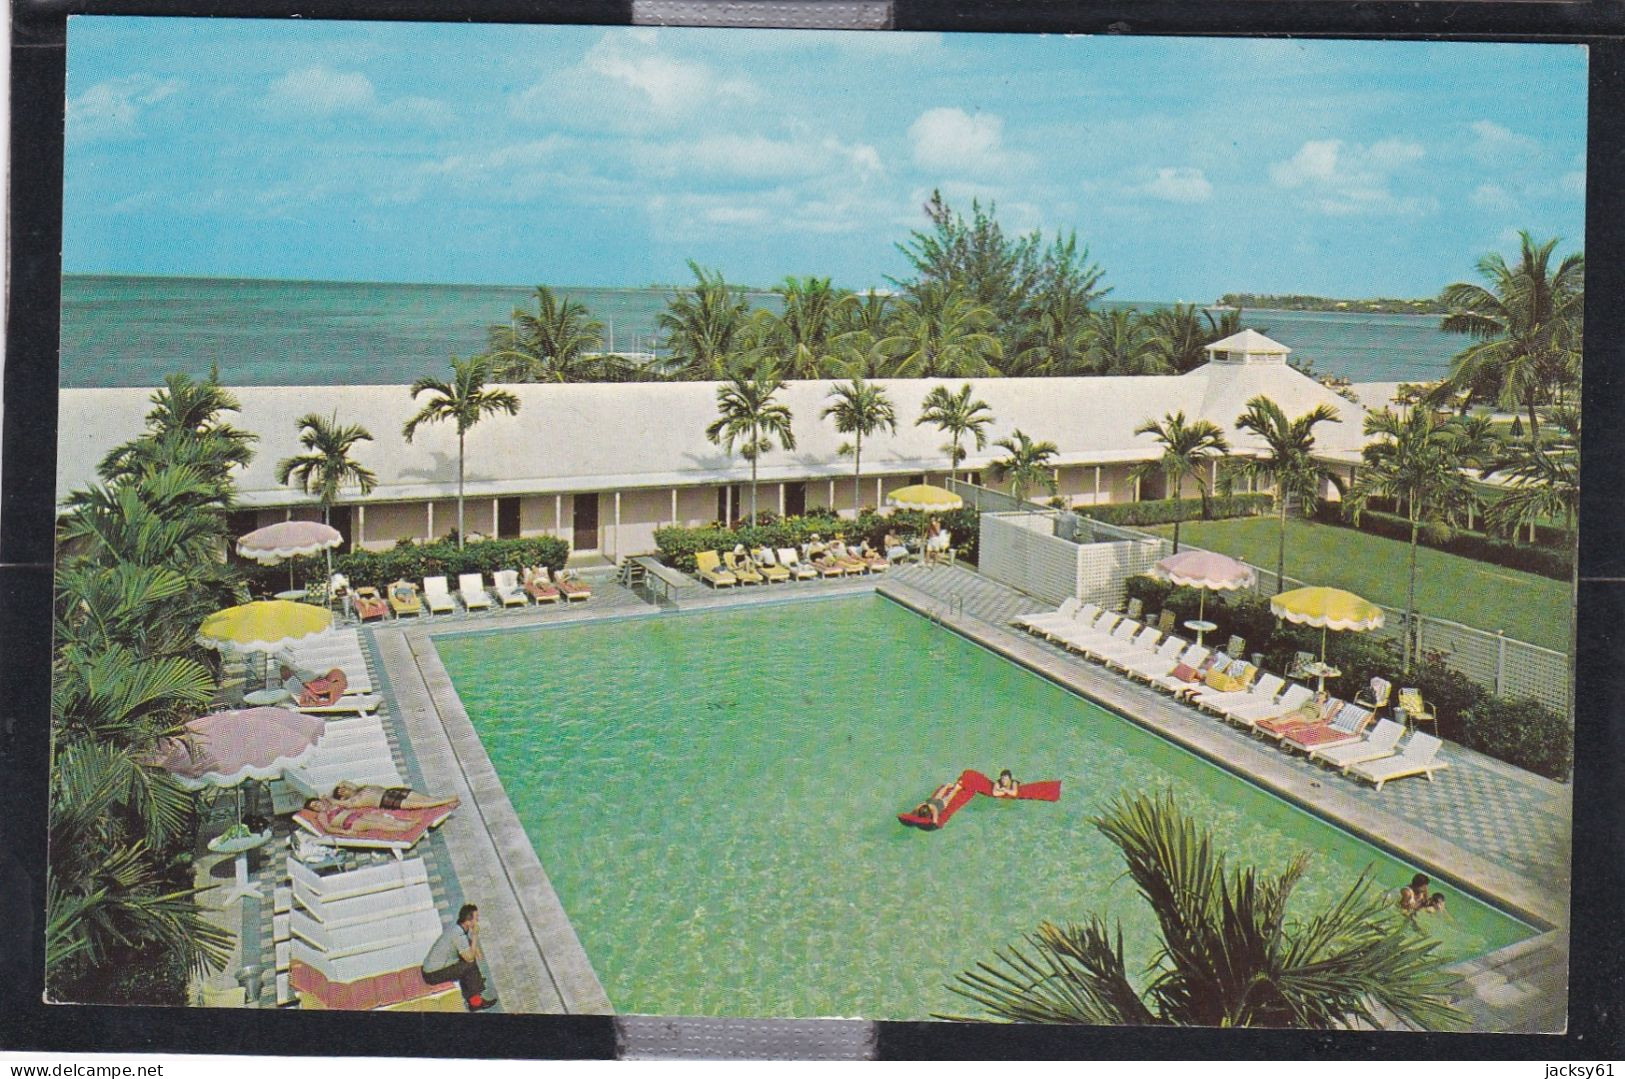 Emerald Beach Hotel Nassau, The Bahamas - Bahamas